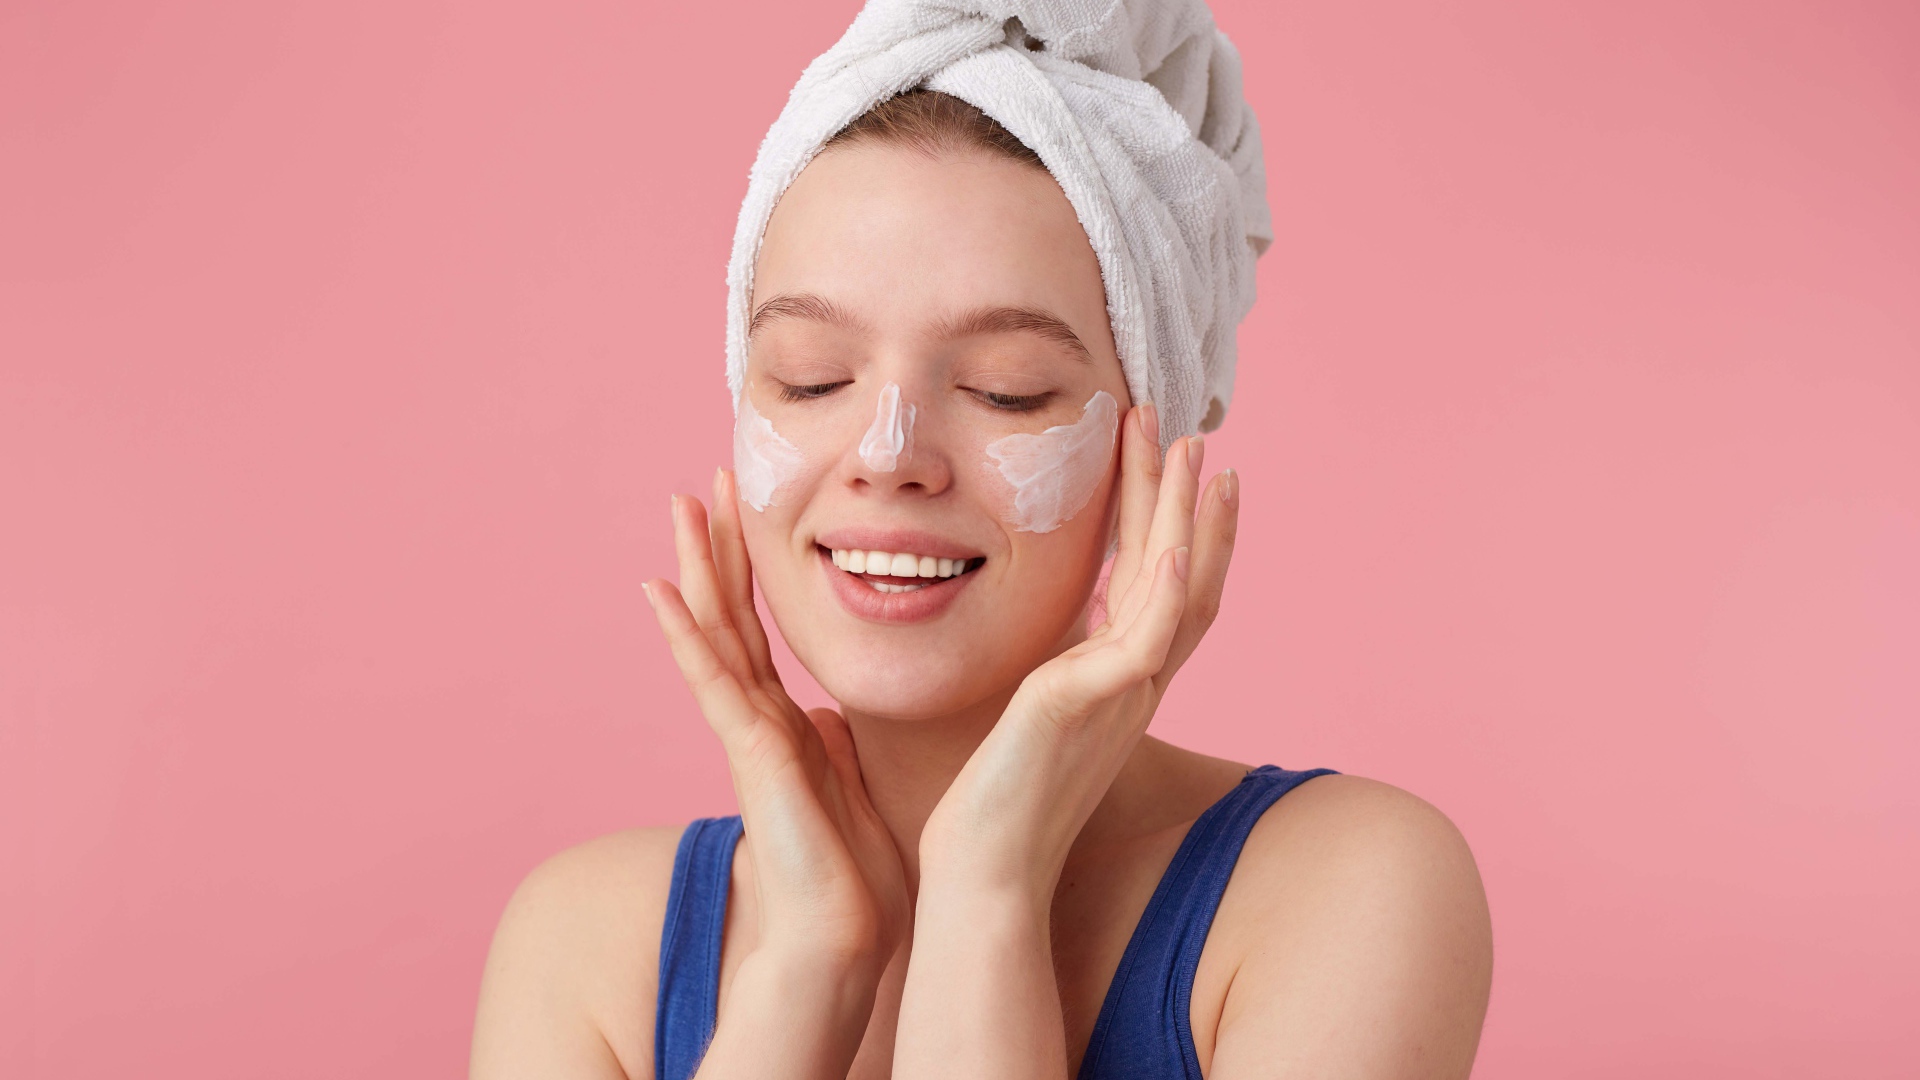 Девушка с полотенцем на голове мажет крем на лицо